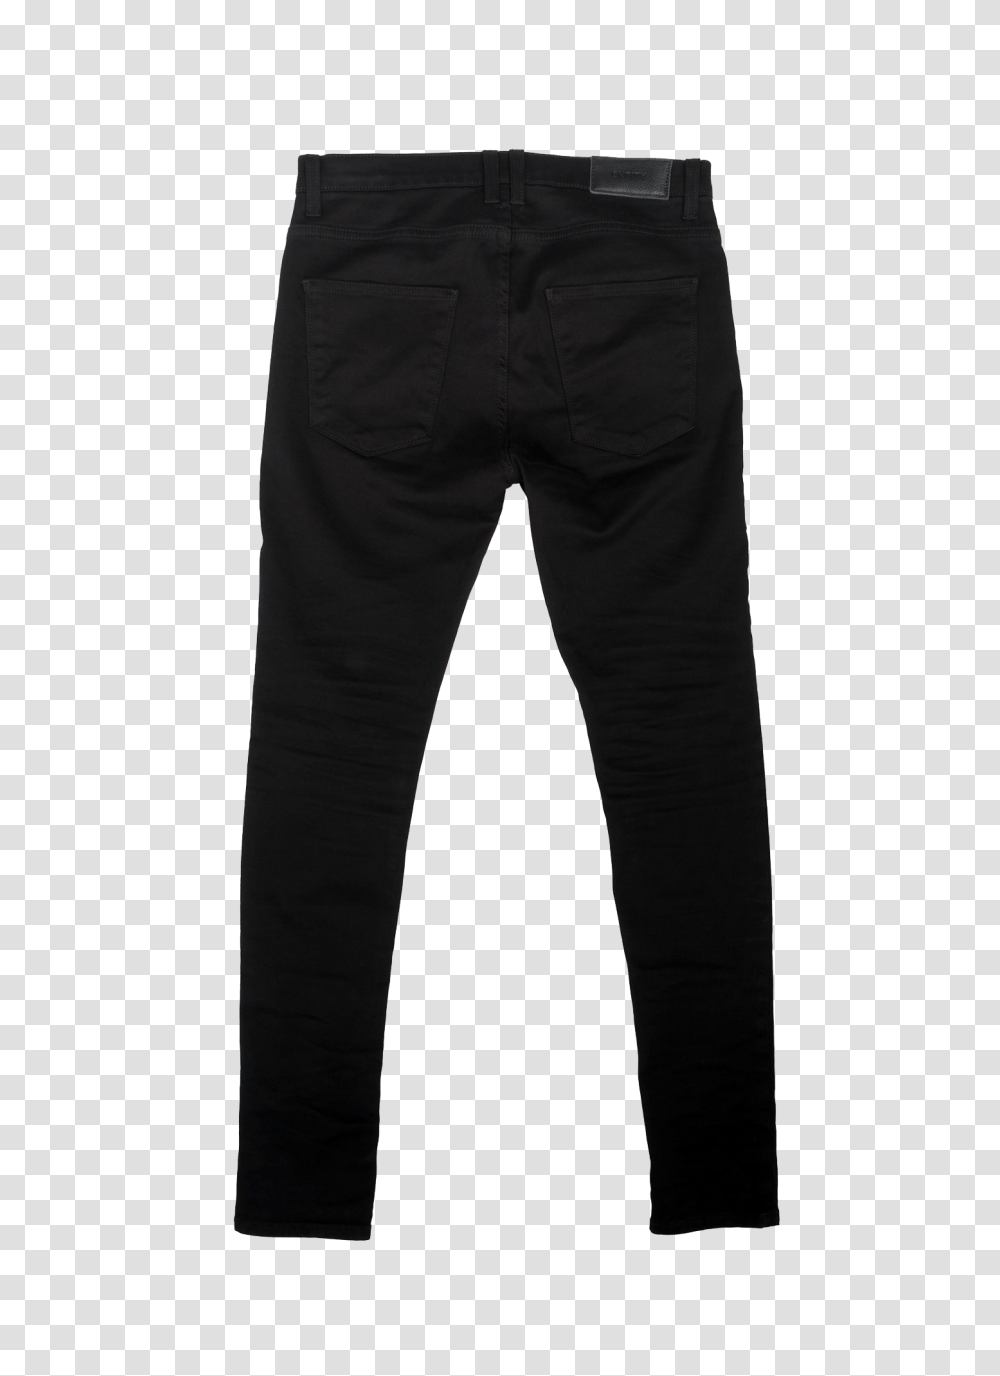 Black Pant, Pants, Apparel, Jeans Transparent Png